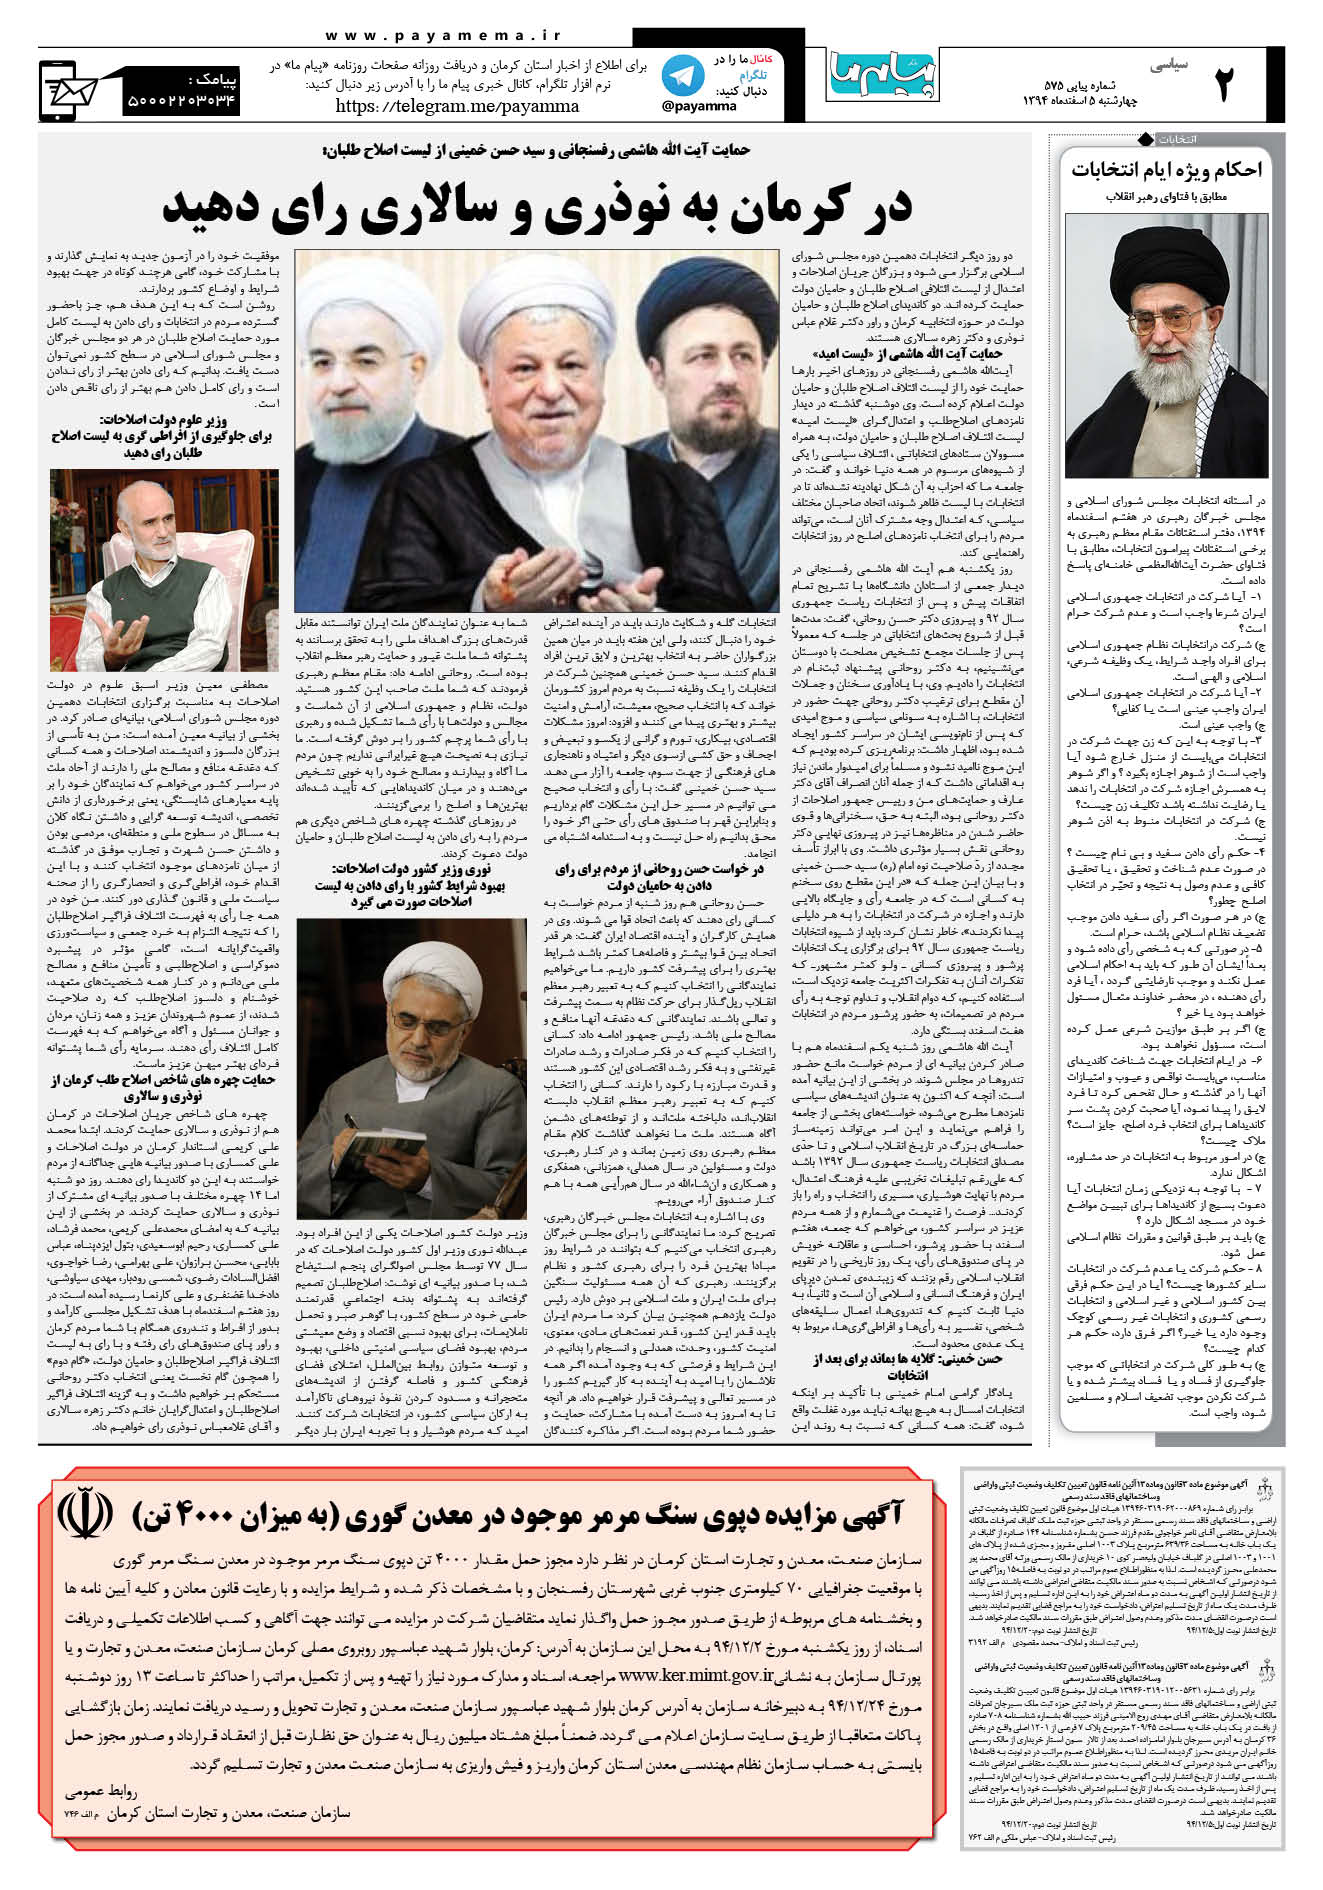 صفحه سیاسی شماره 575 روزنامه پیام ما